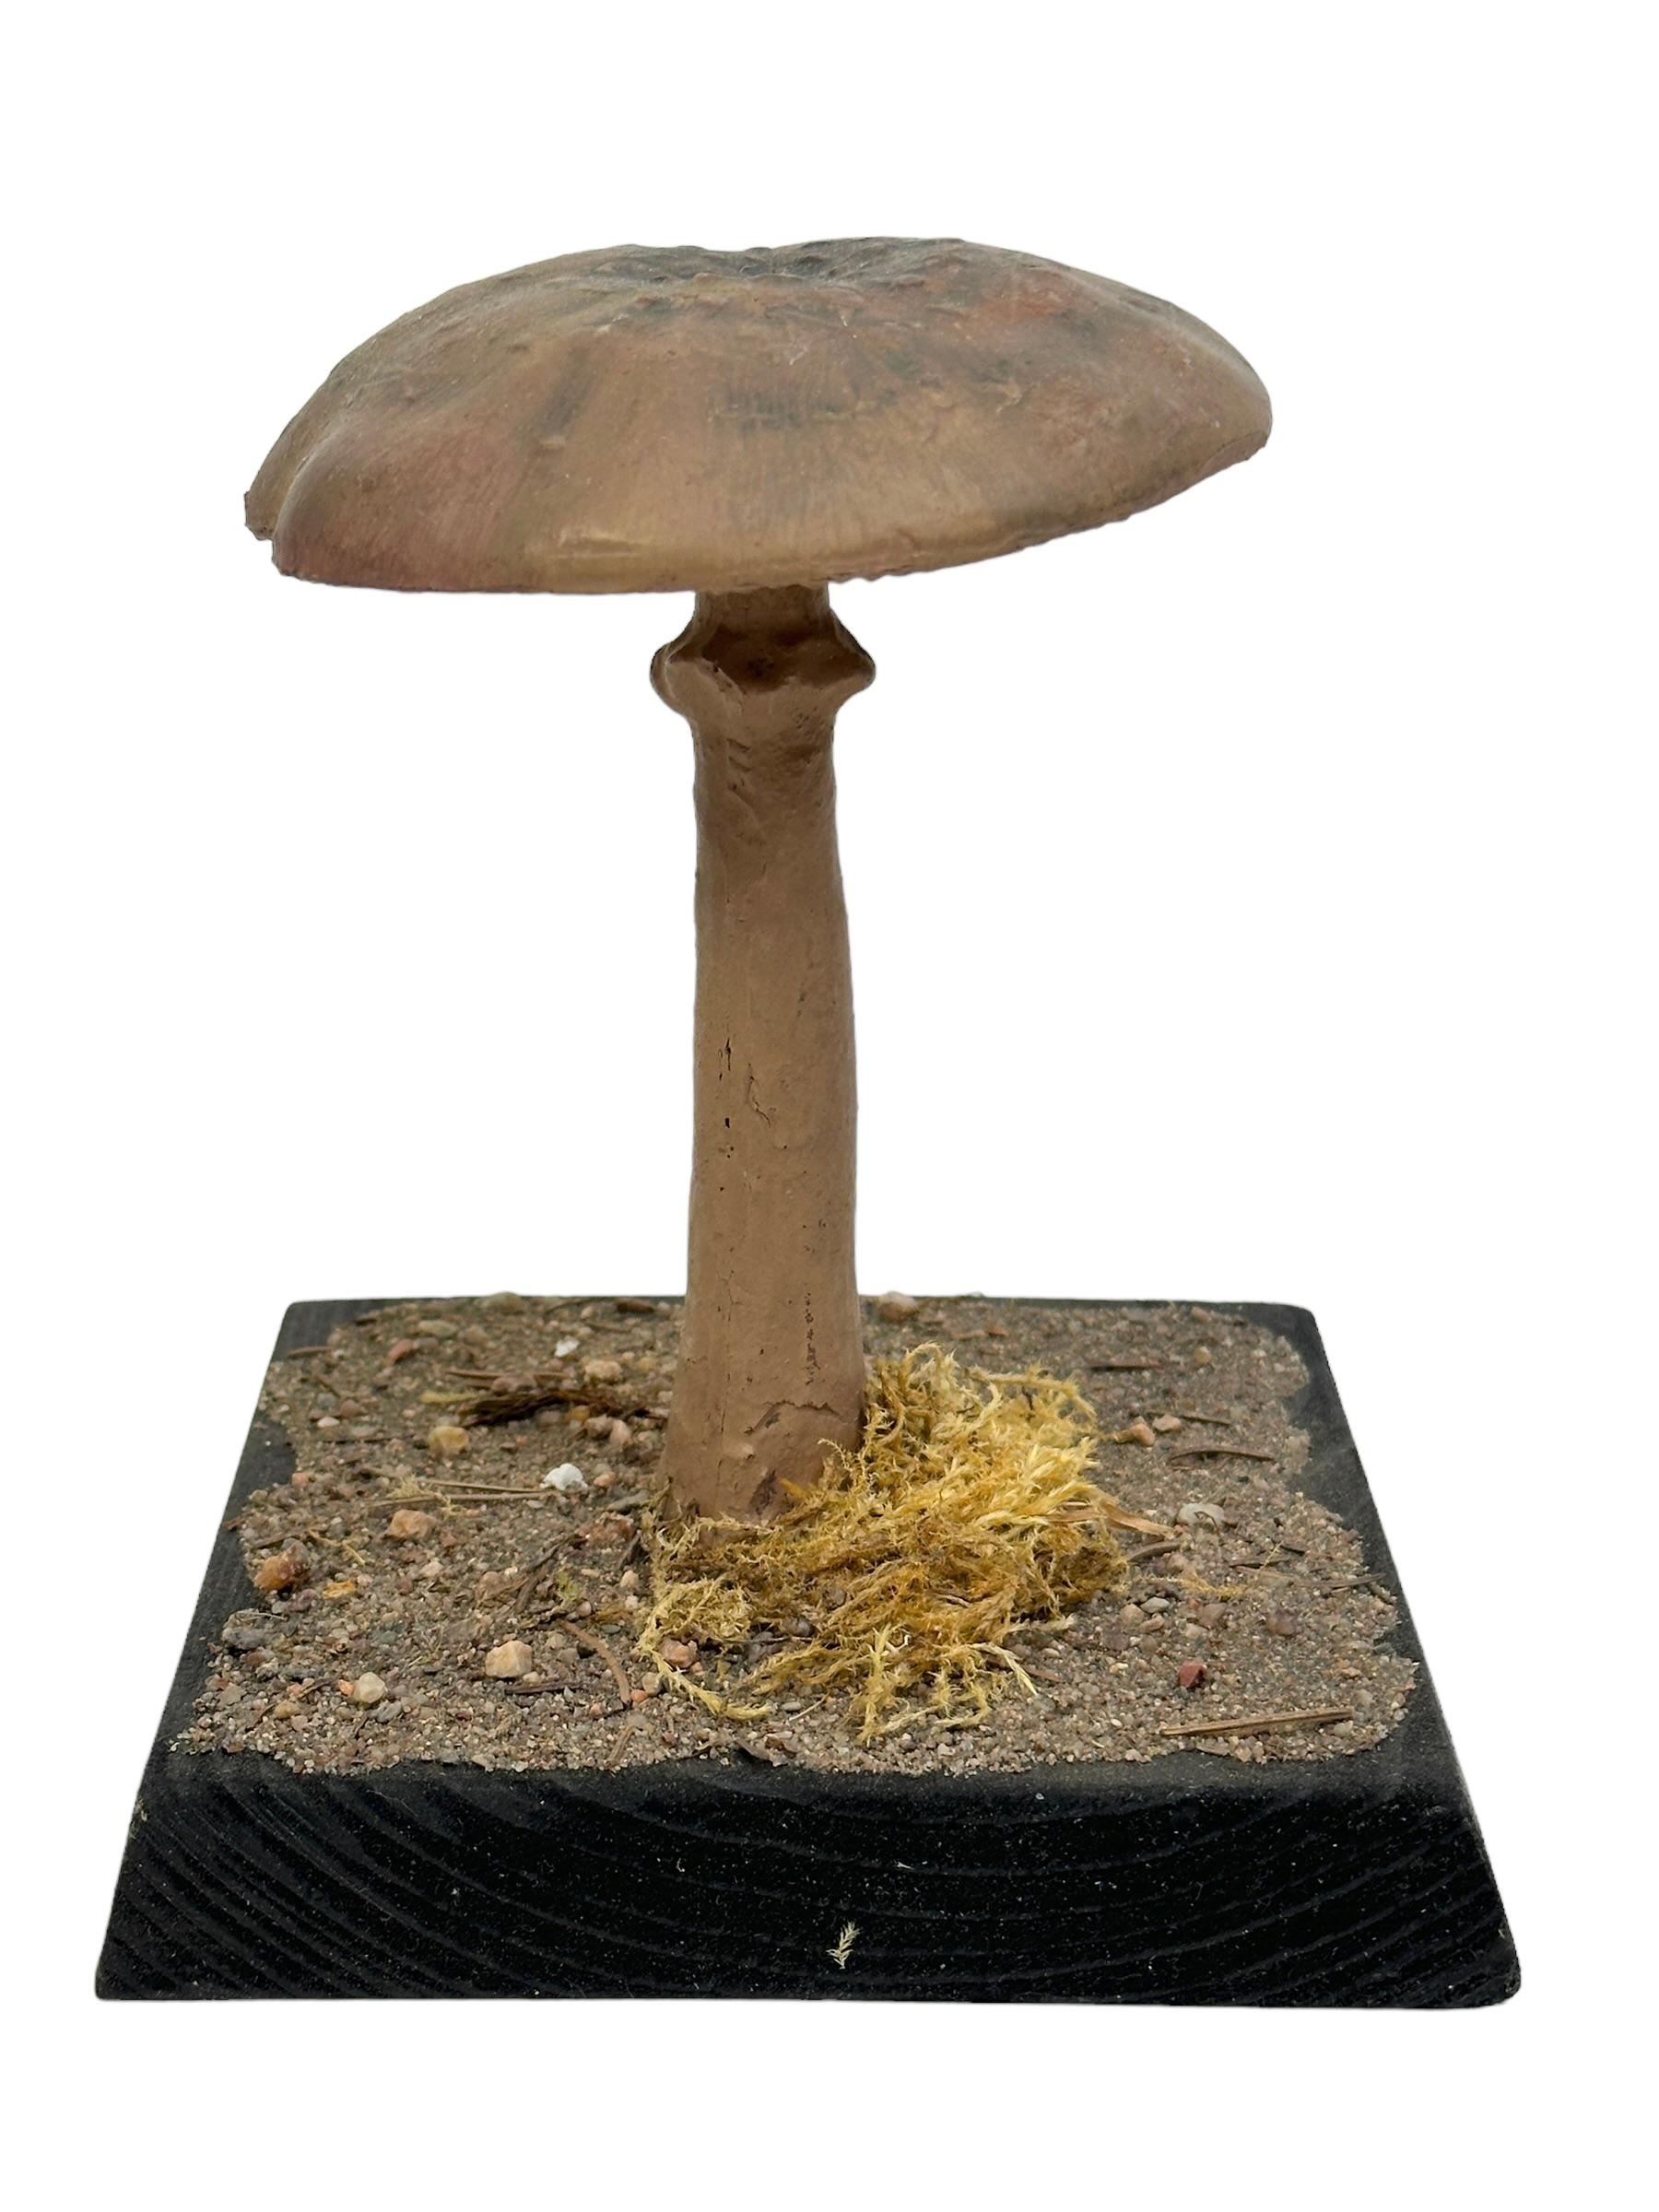 specimen of mushroom